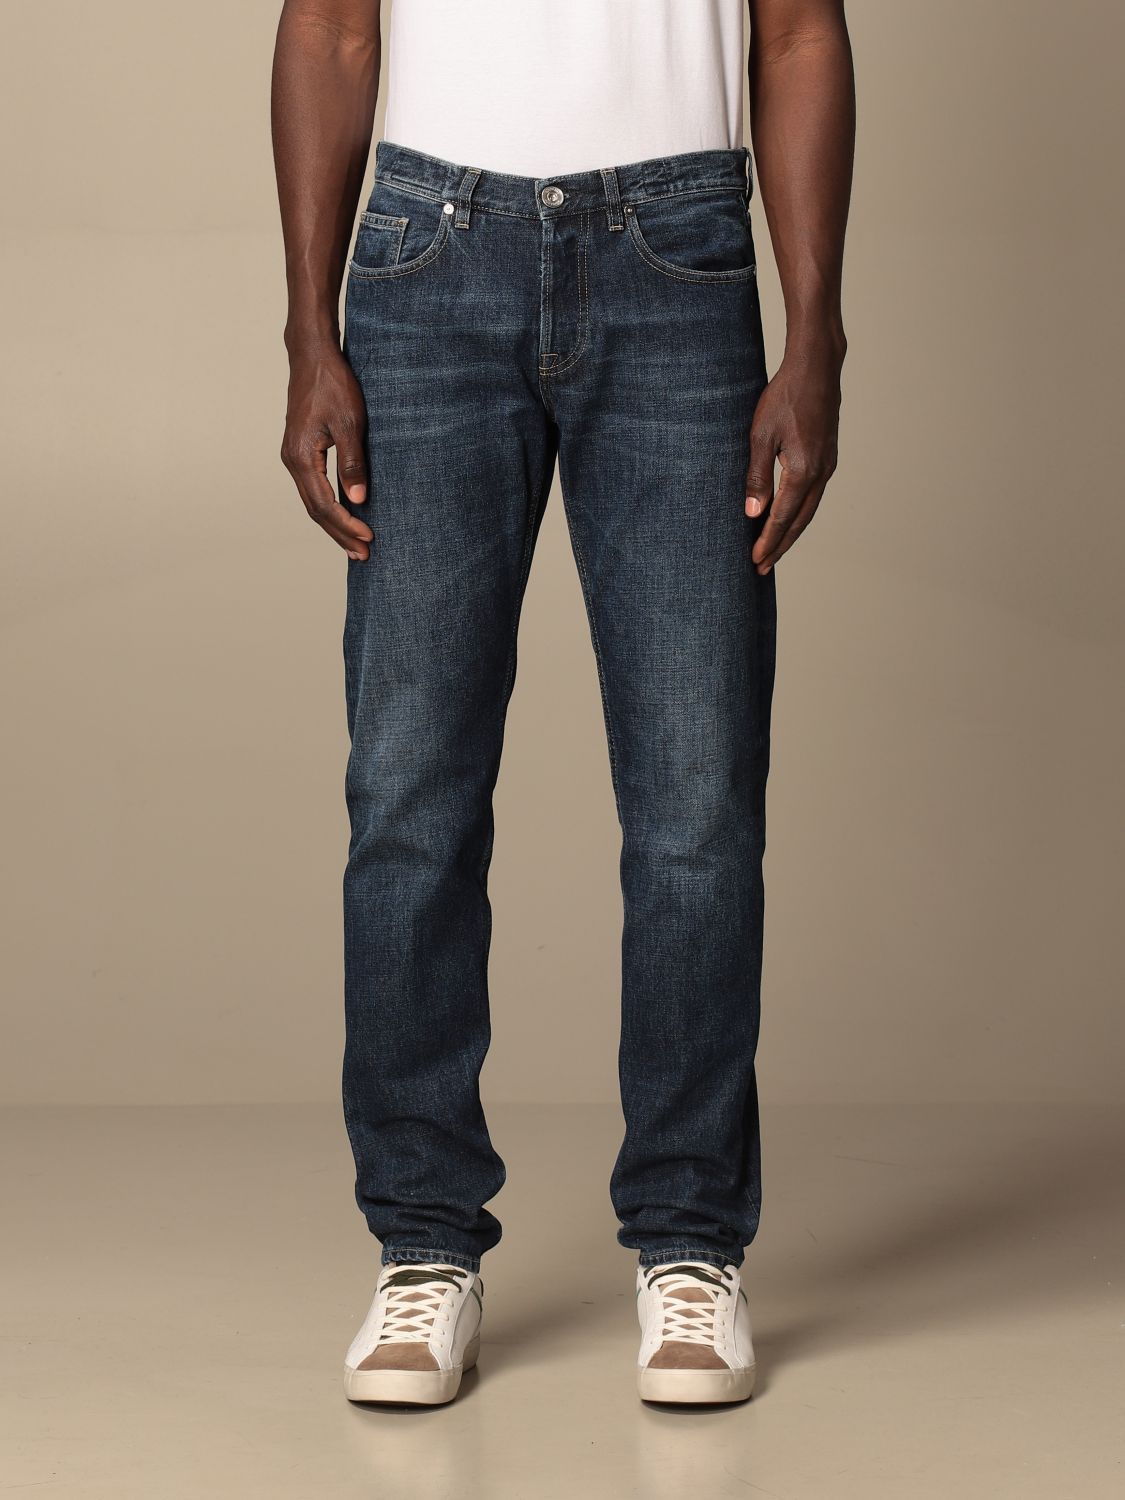 Jeans a 5 tasche con bottoni metallici Giglio.com Abbigliamento Pantaloni e jeans Jeans 